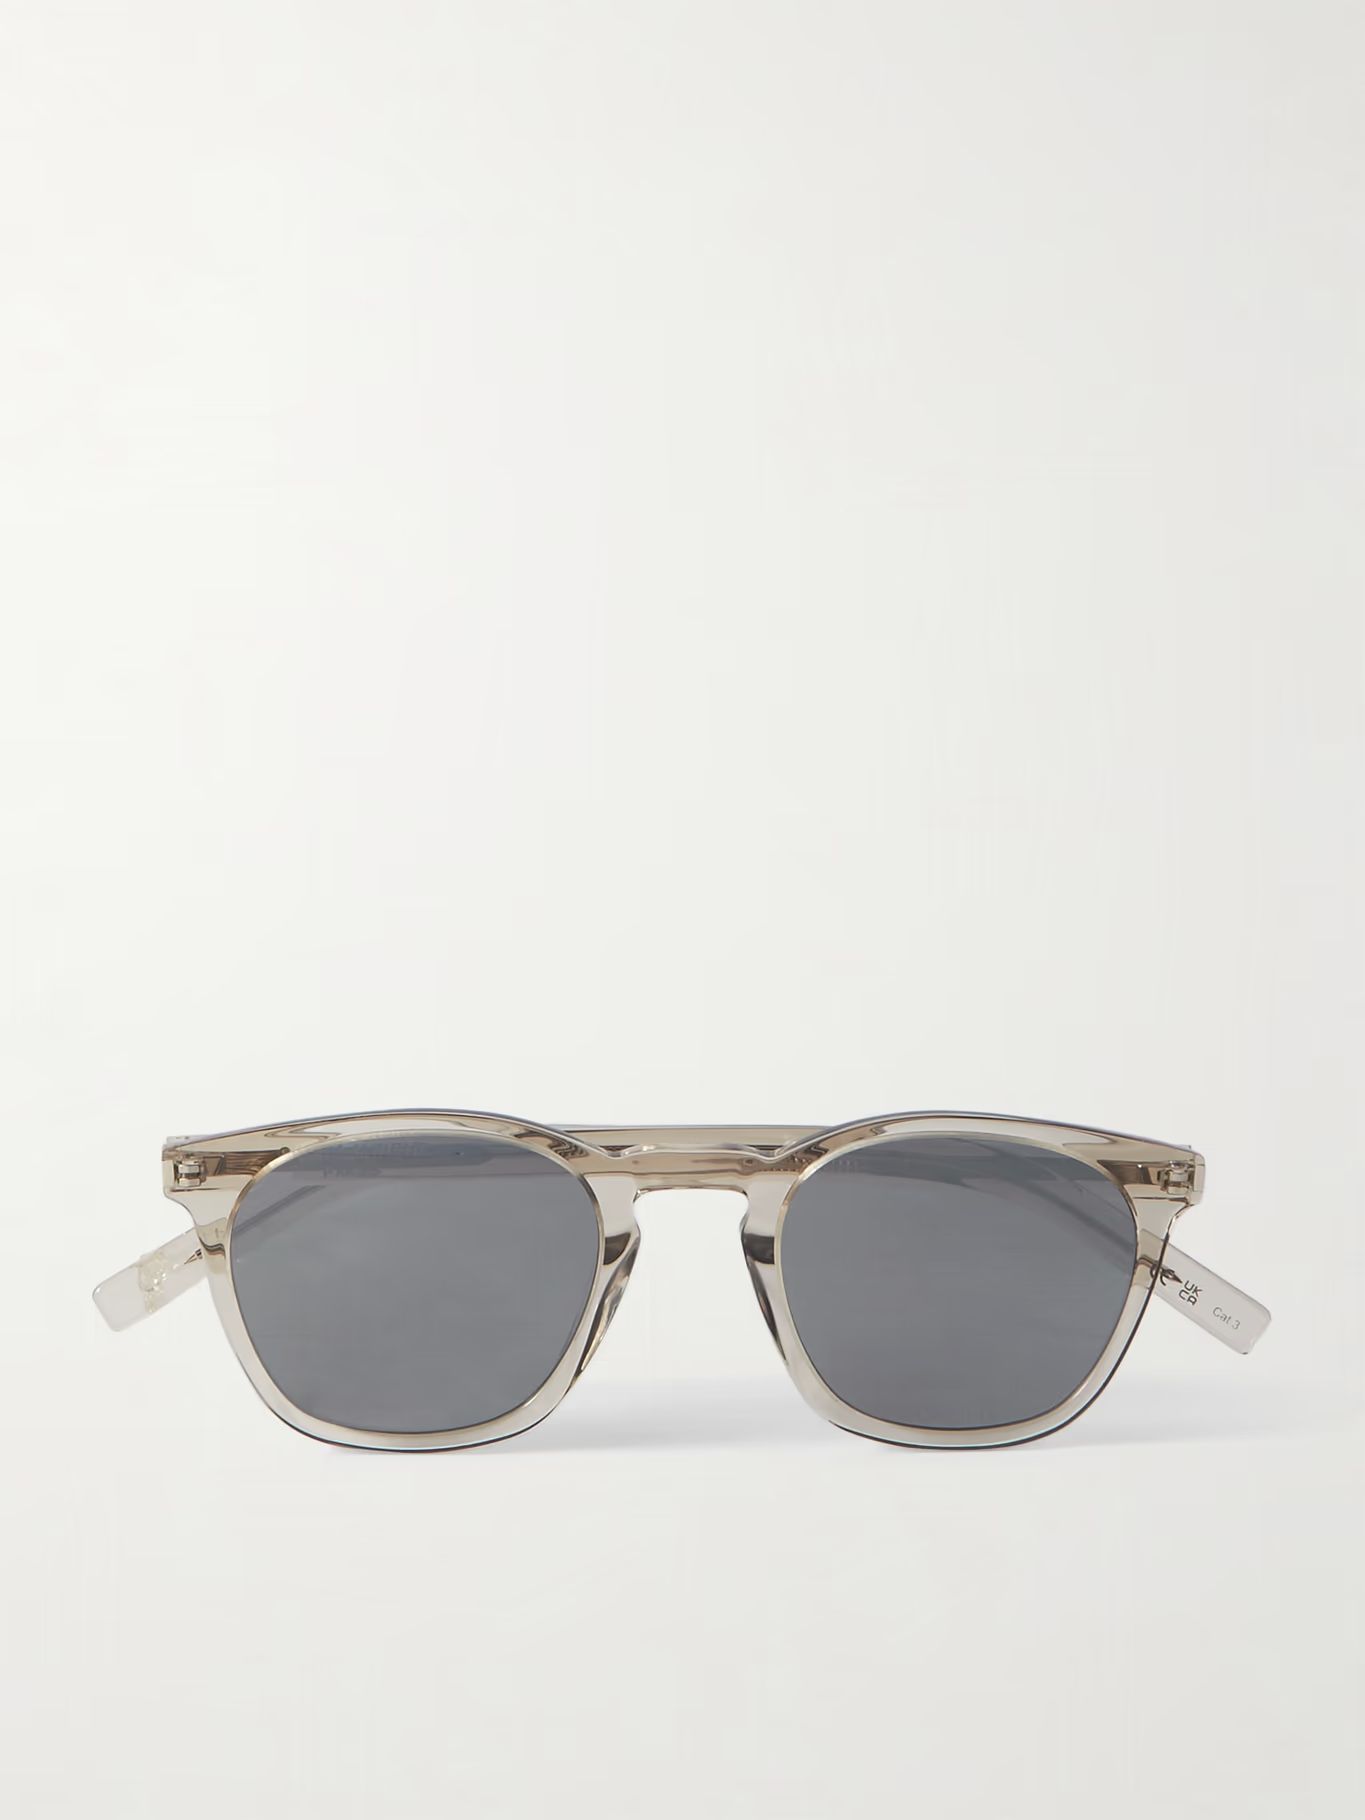 Sonnenbrille mit rundem Rahmen aus Azetat mit silberfarbenen Details | Mr Porter (DE)